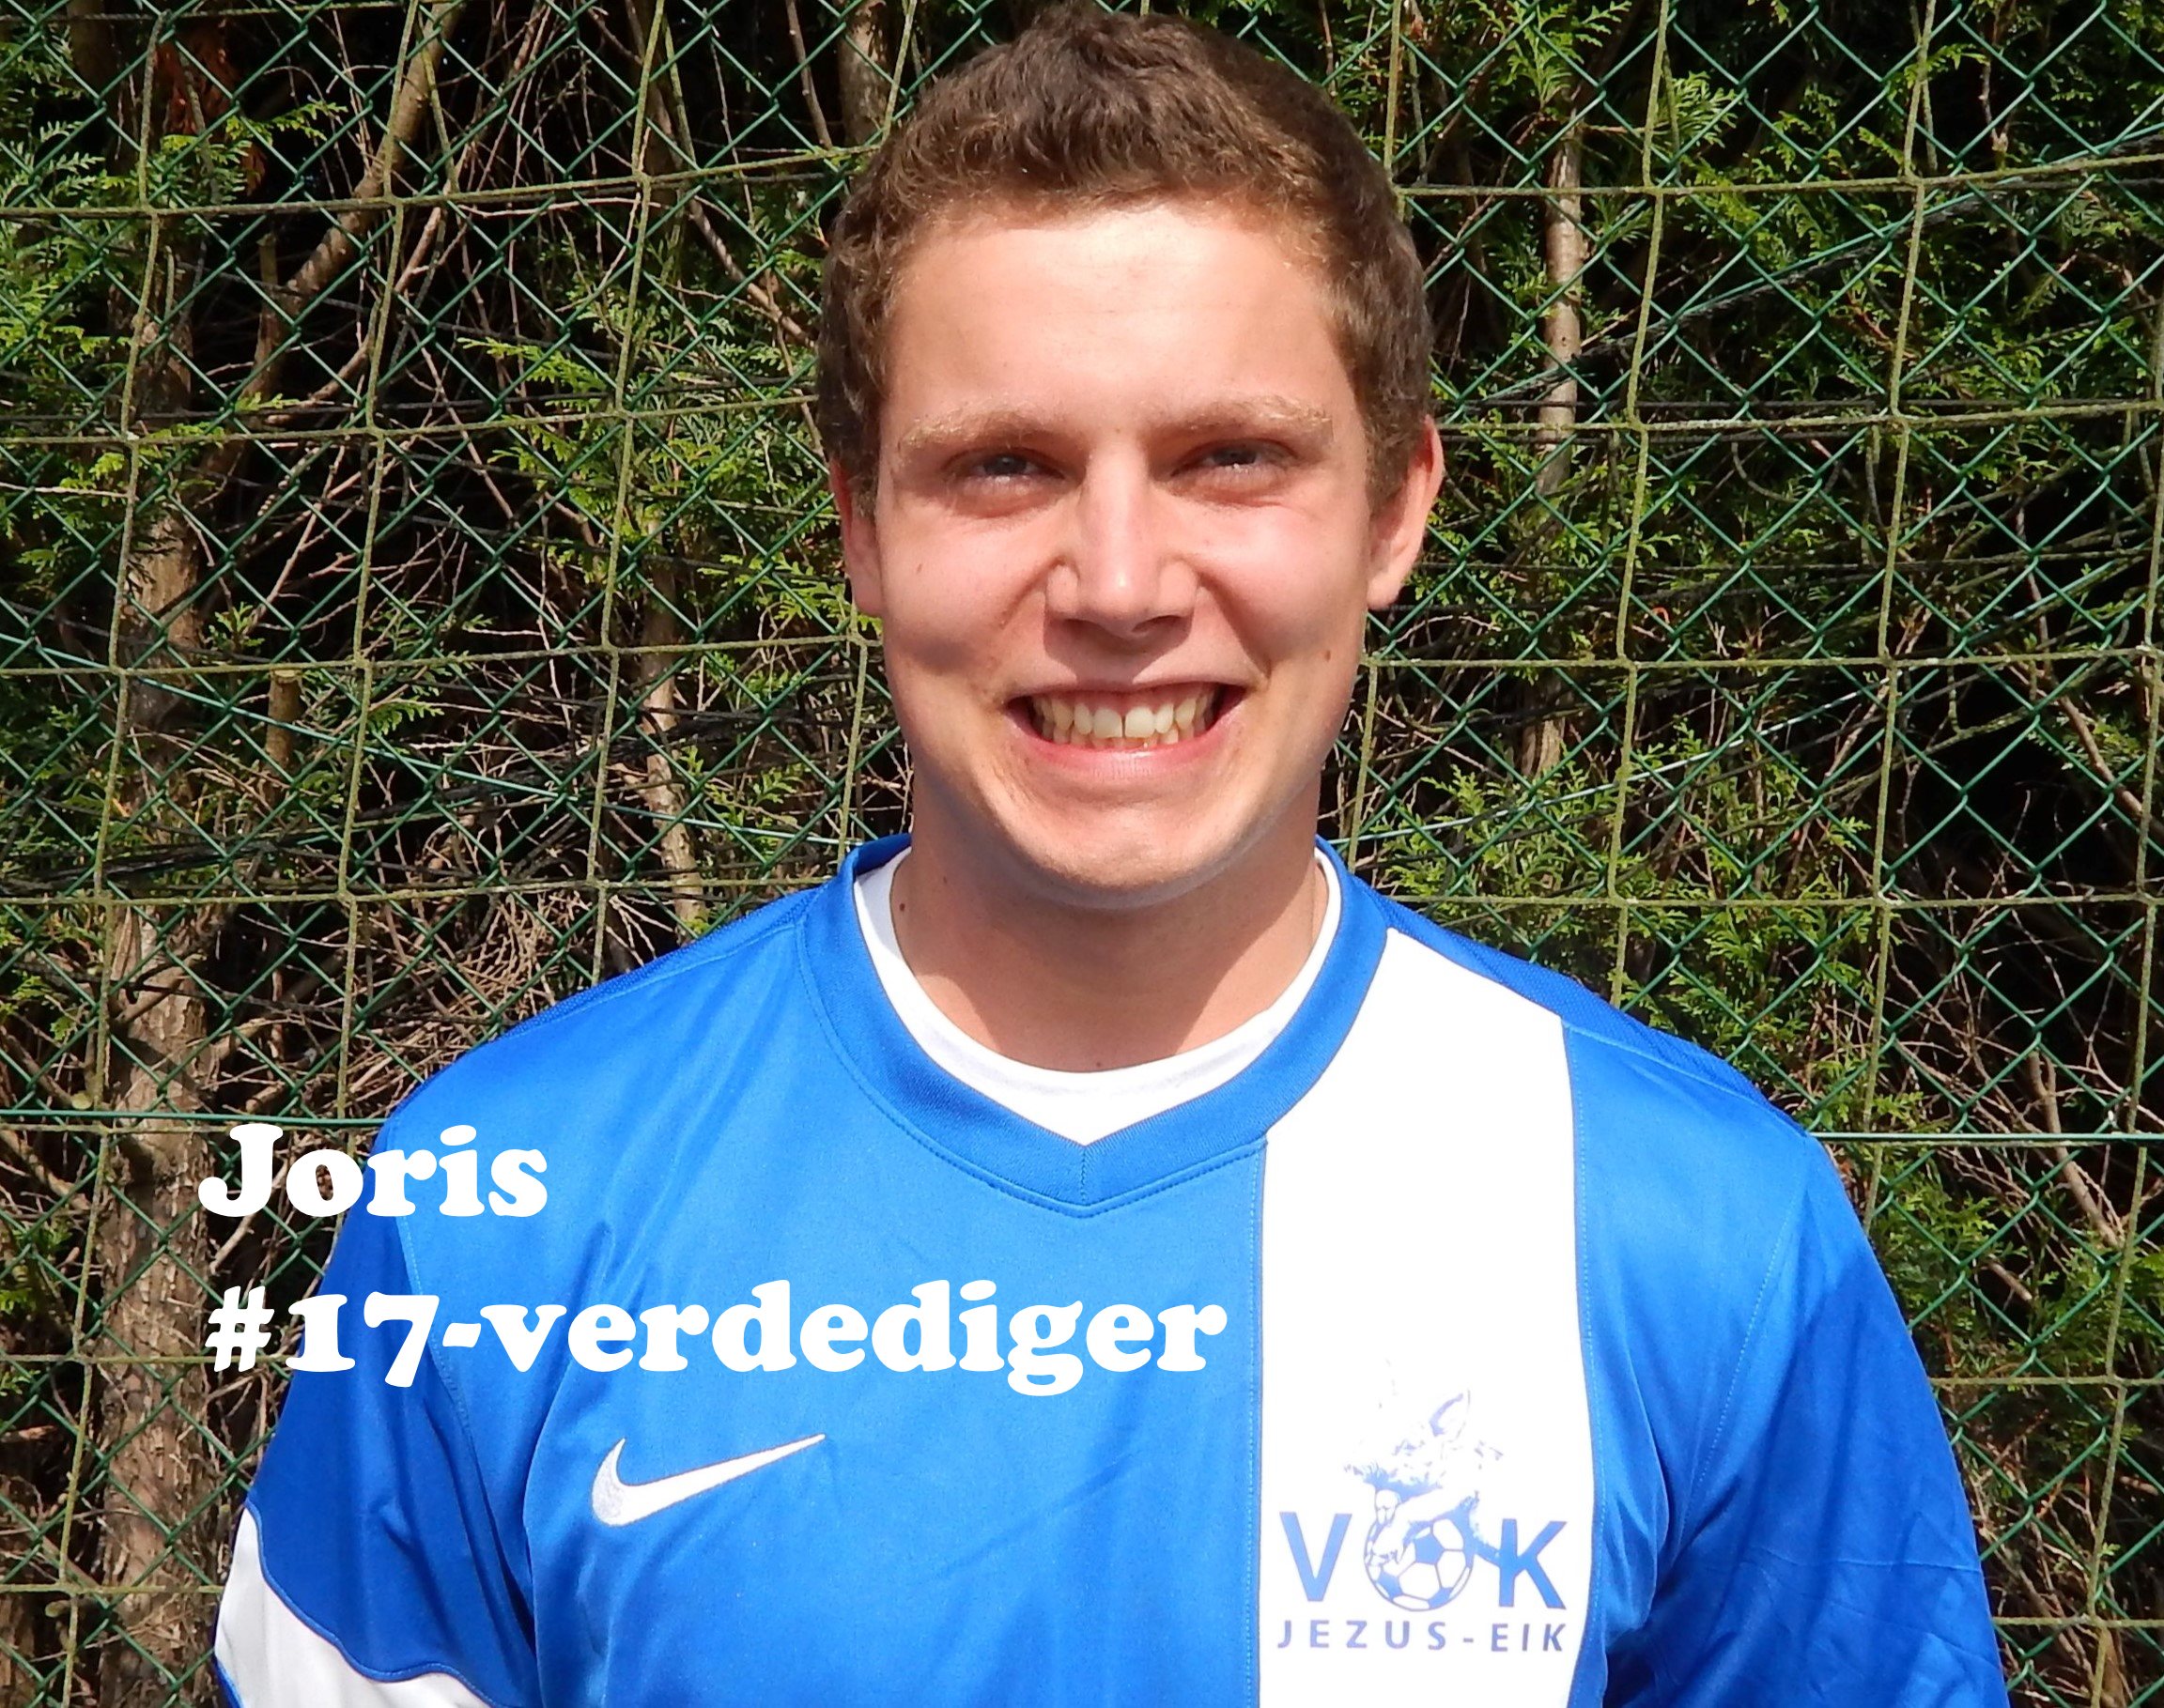 Joris - Verdediger - 17